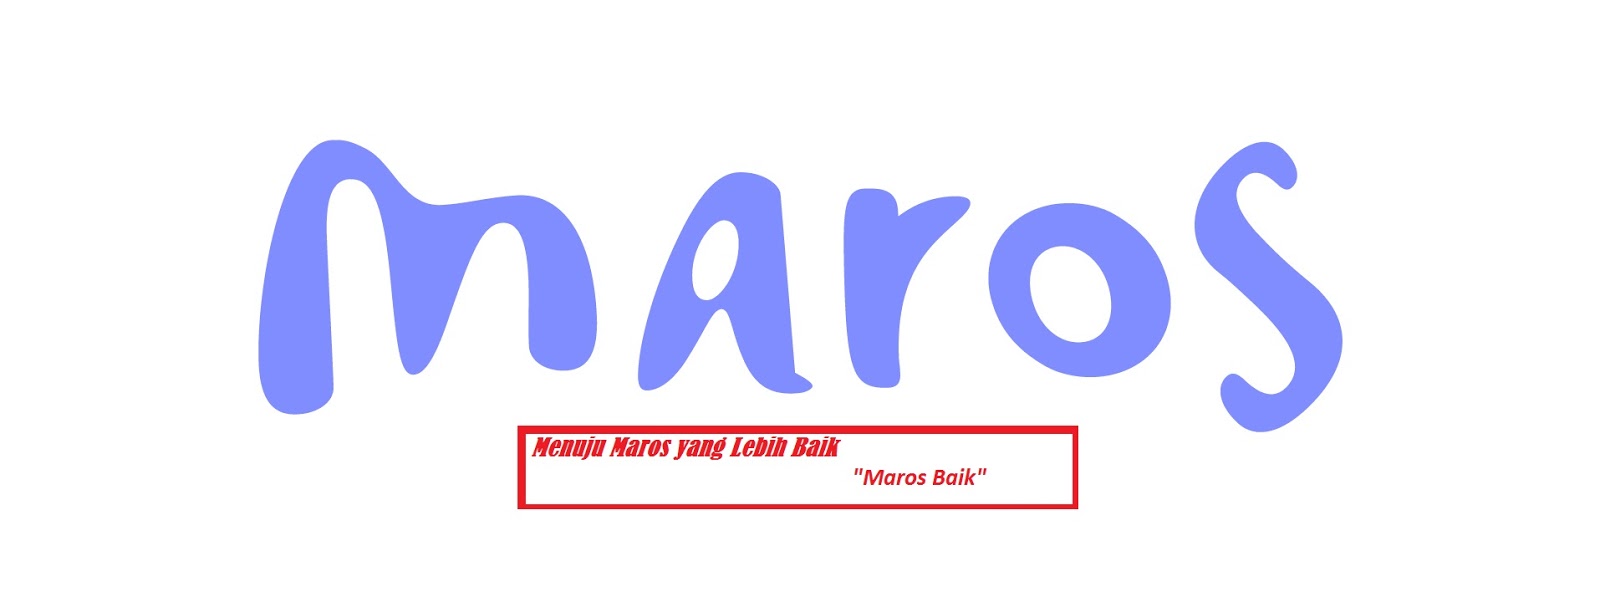 Sejarah Maros Menurut Versi dari Int.